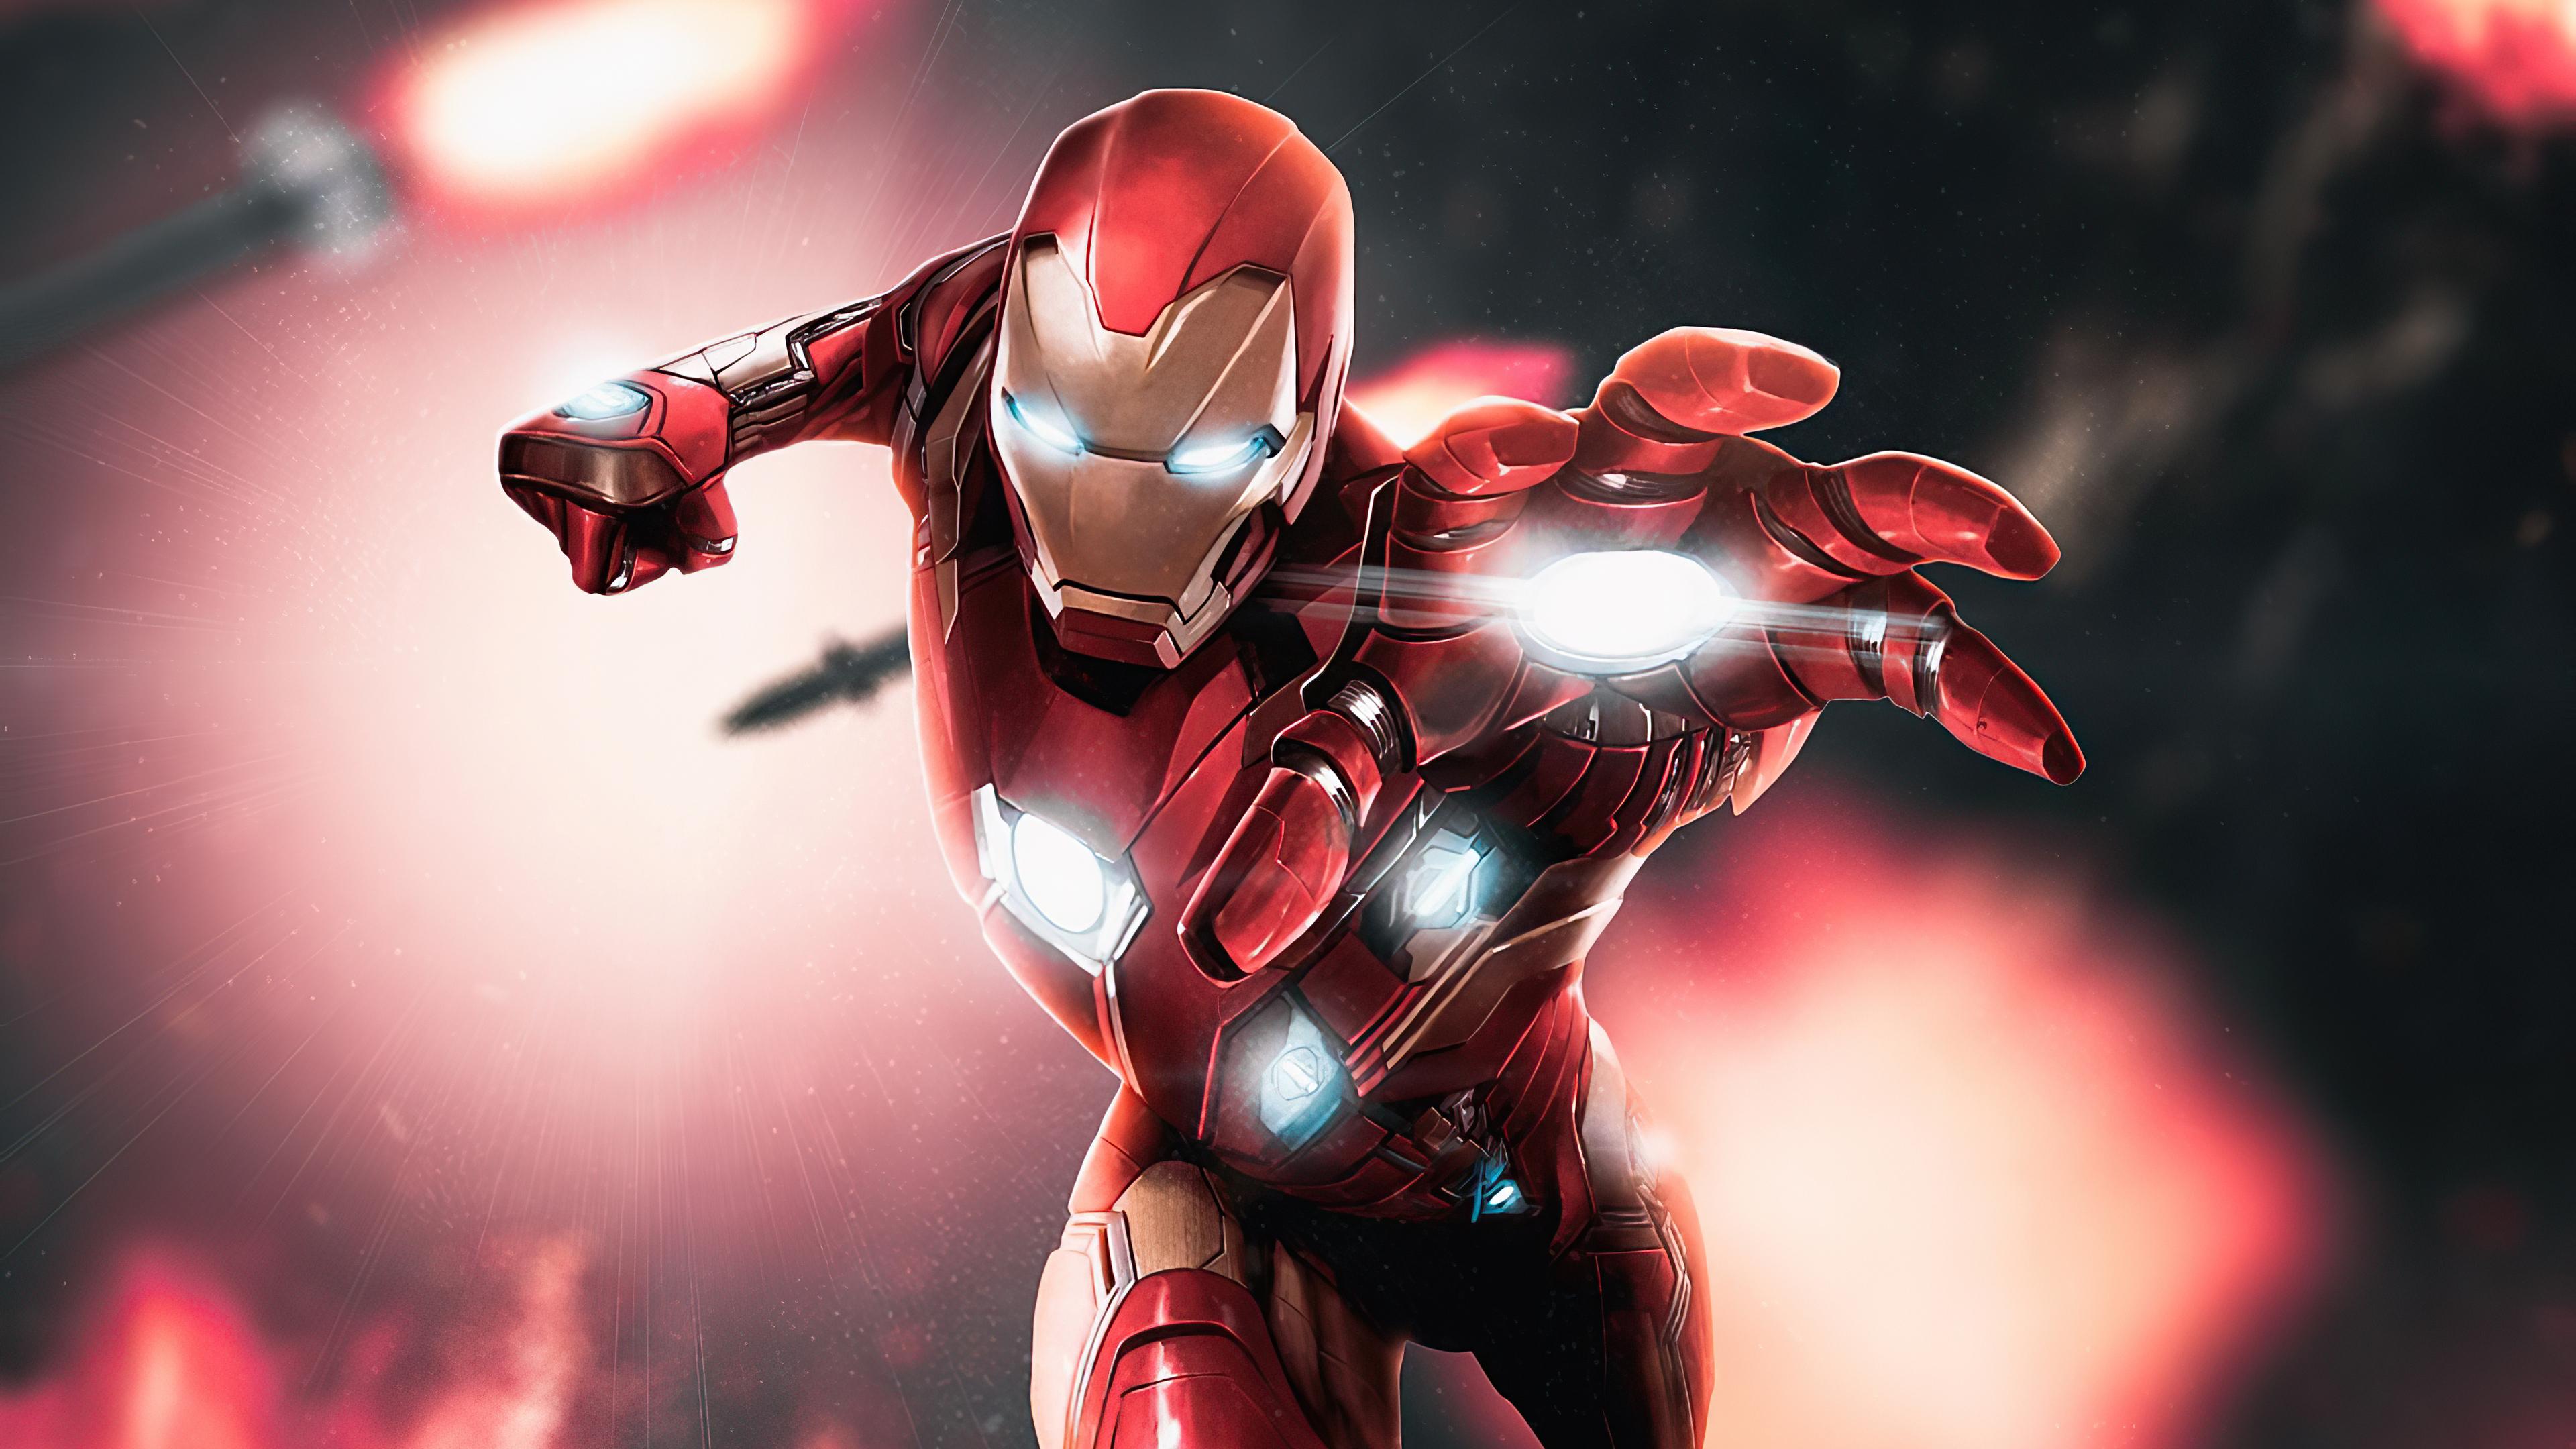 3840 x 2160 · jpeg - Iron Man 2020 Art Wallpaper 4k Ultra HD ID:6013